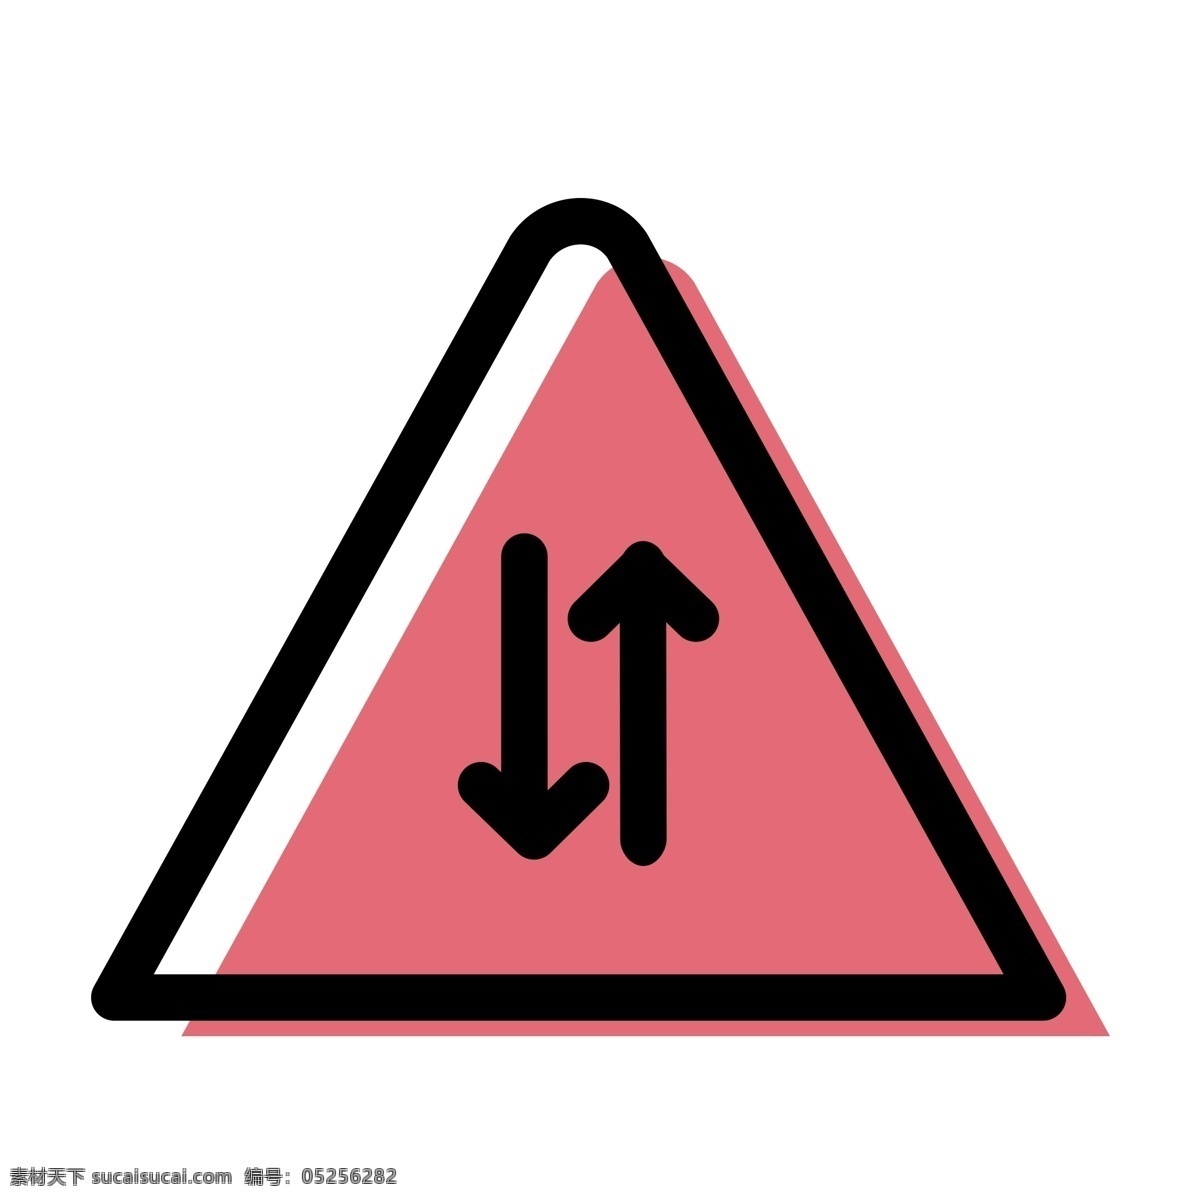 箭头图标 三角标 提示牌 扁平化ui ui图标 手机图标 界面ui 网页ui h5图标